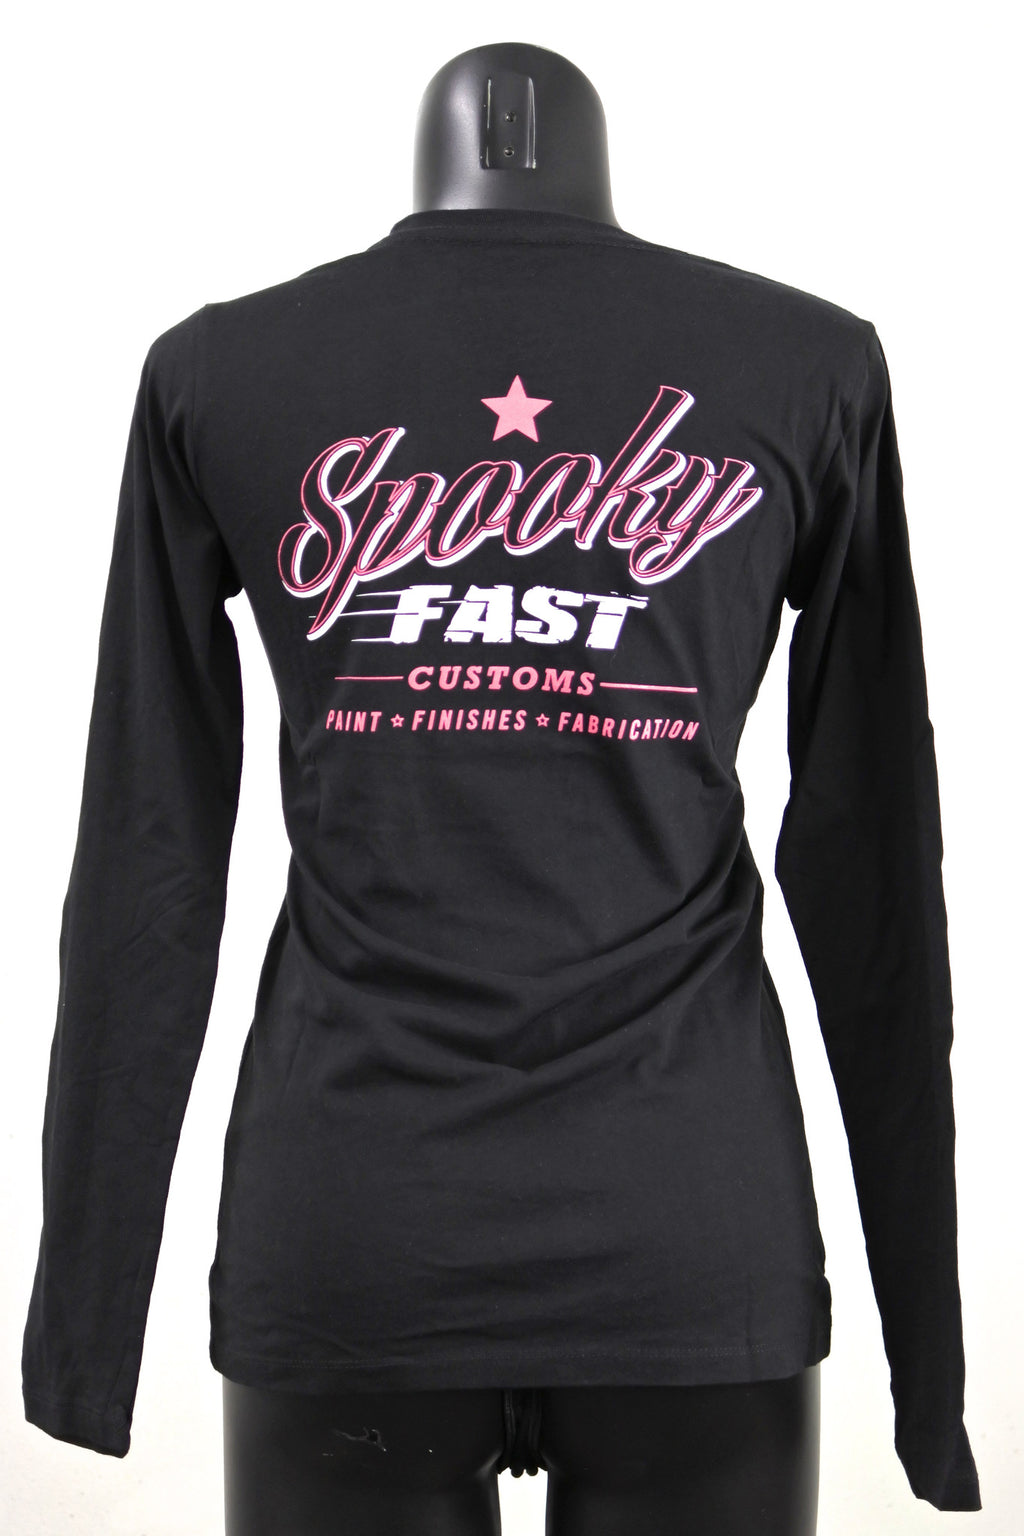 Spooky Fast Women's Corporate Logo Long Sleeve T-Shirt - Black